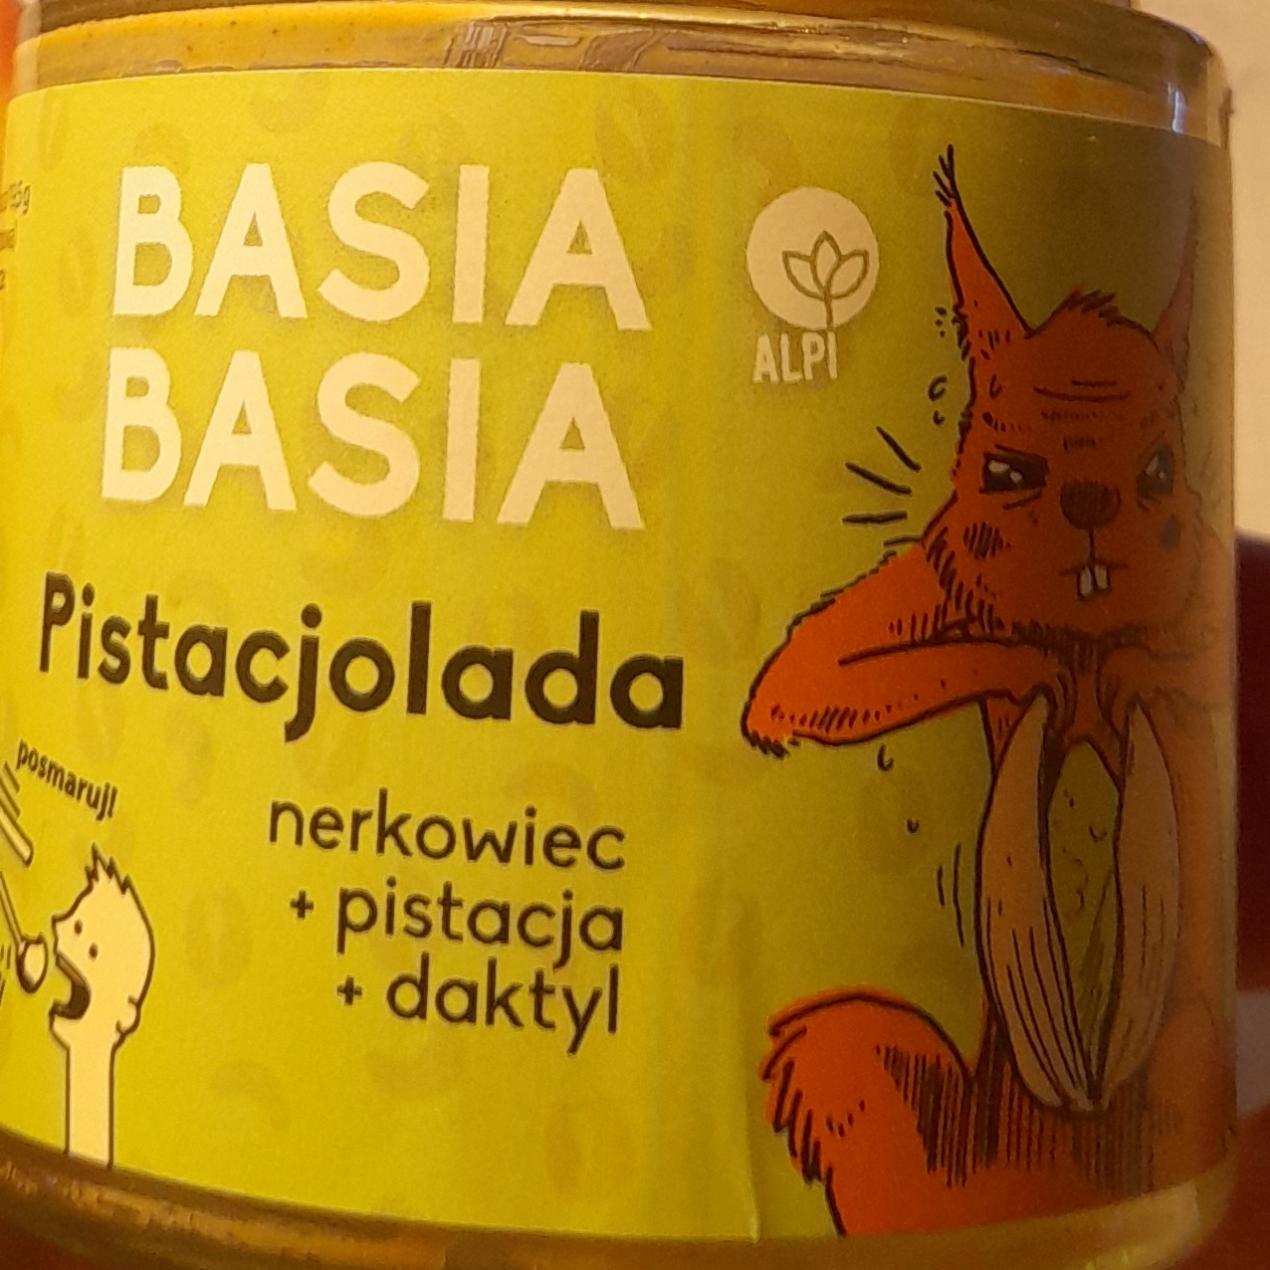 Zdjęcia - PIstacjolada nerkowiec +pistacja +daktyl Basia Basia